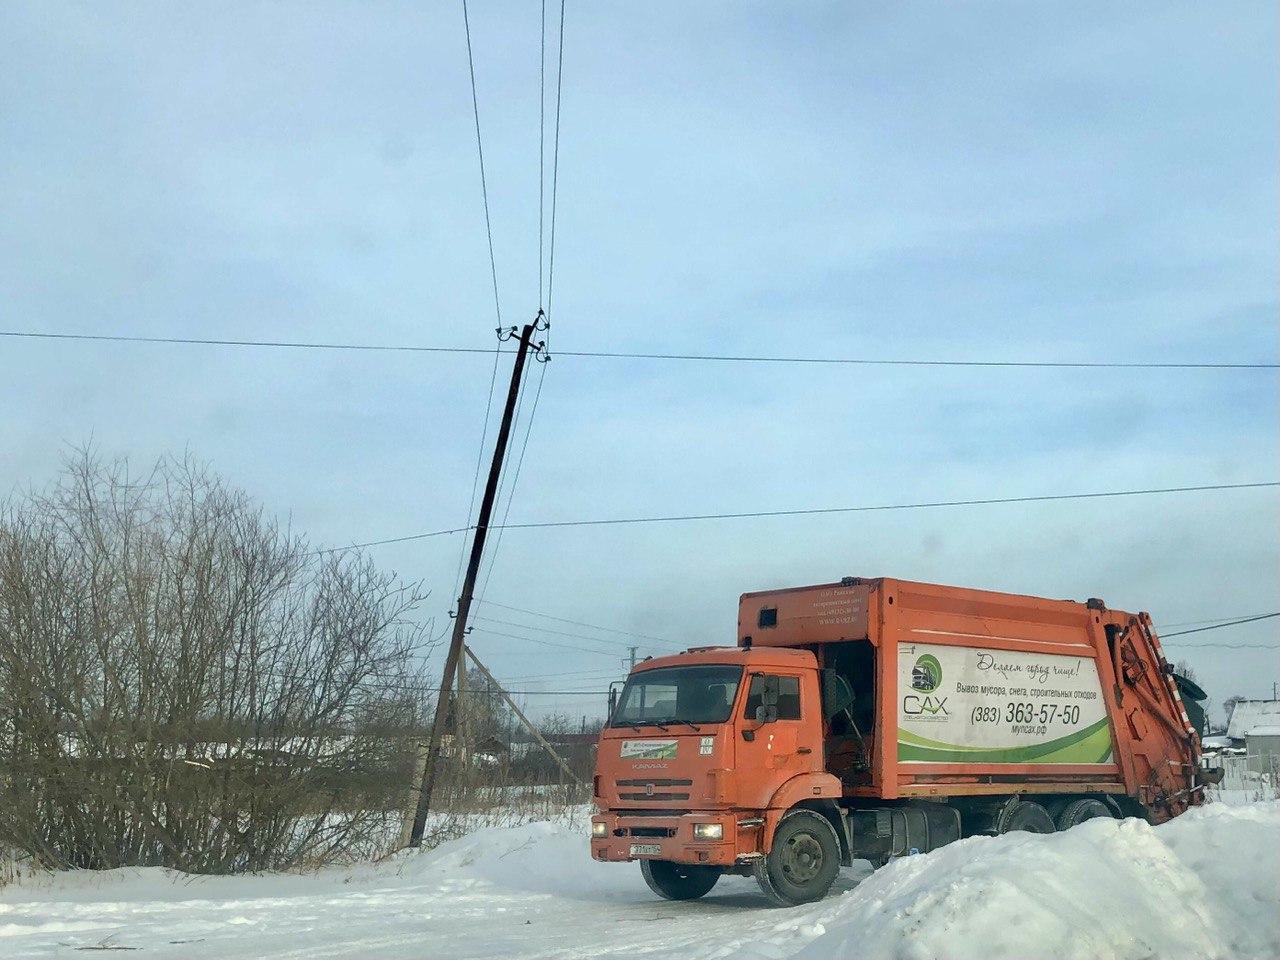 Новый перевозчик  ТКО МУП «Спецавтохозяйство» осуществляет деятельность на территории Коченевского района с 13 января. Сейчас происходит налаживание работы по существующим графикам.